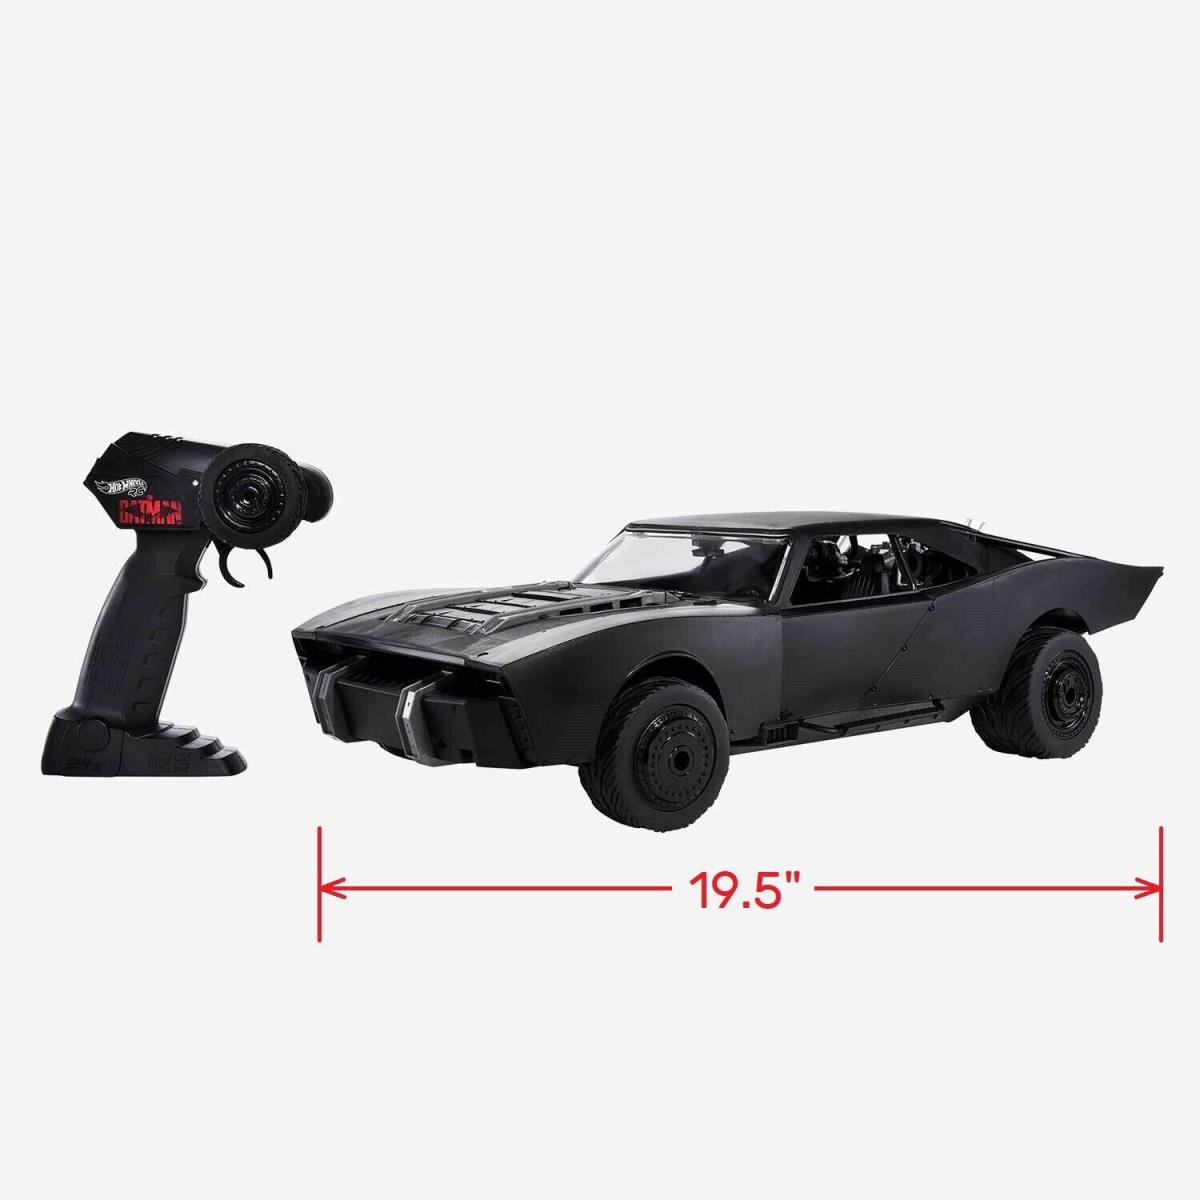 HCD19-979 Hot Wheels Collectors Exclusive R/c The Batman Batmobile 1:10